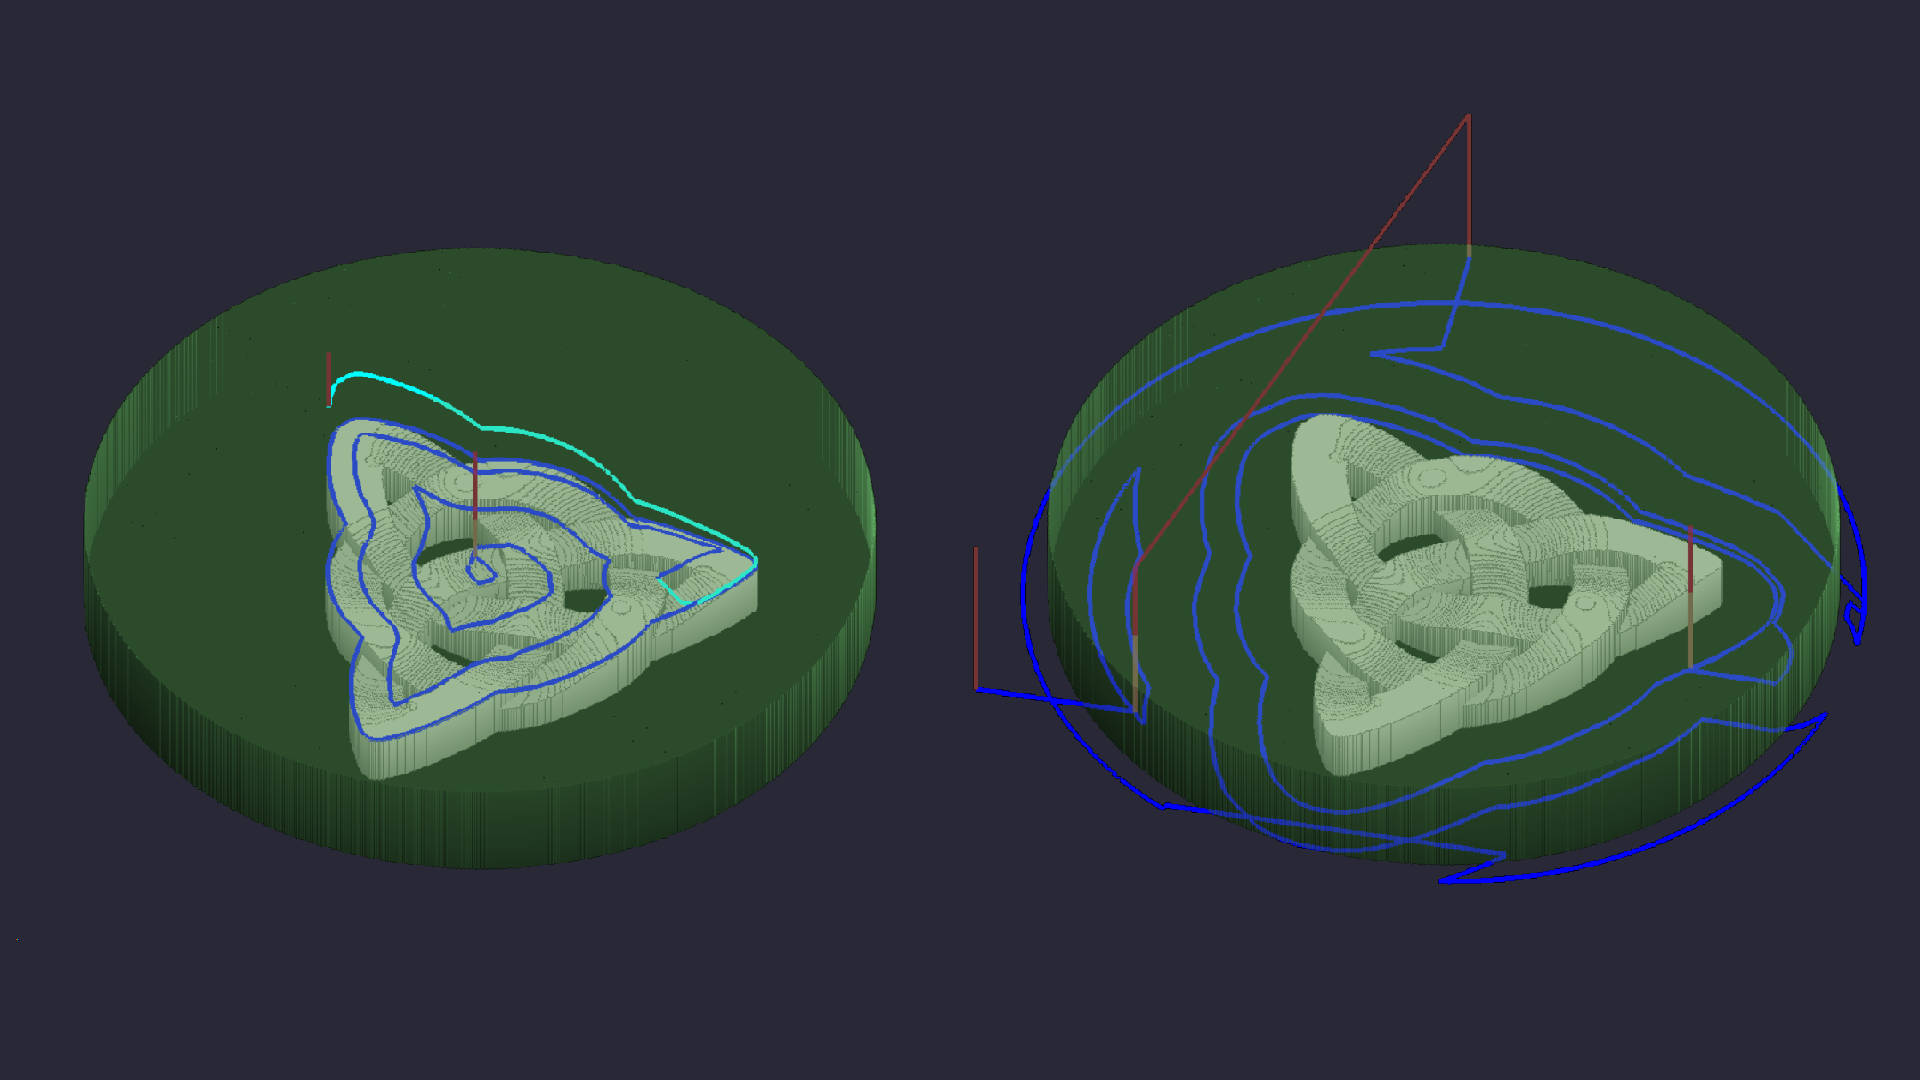 Die Abbildung zeigt zwei identische Modelle. Im linken Modell sind die Werkzeugwege nur innerhalb des Modellbereichs sichtbar. Im rechten Modell sind die Werkzeugwege nur außerhalb der Modellgeometrie.